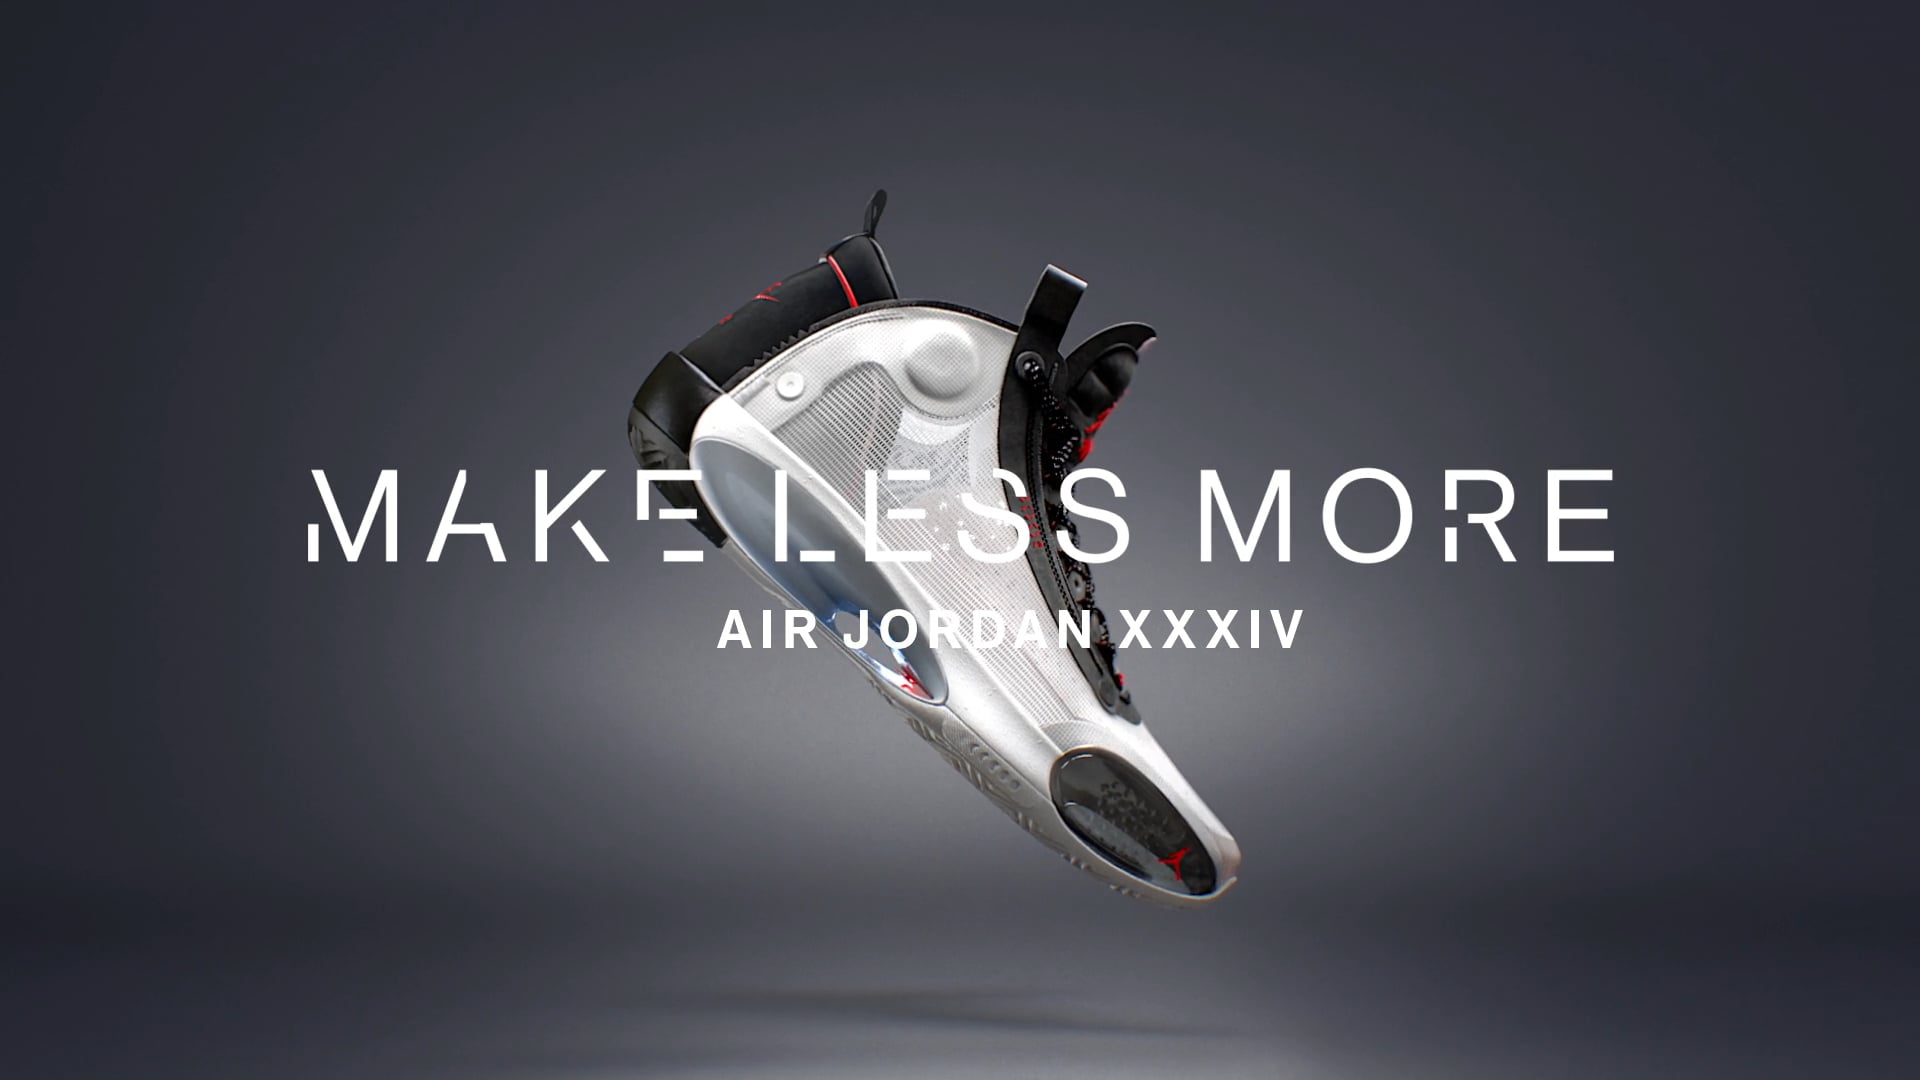 Air Jordan XXXIV